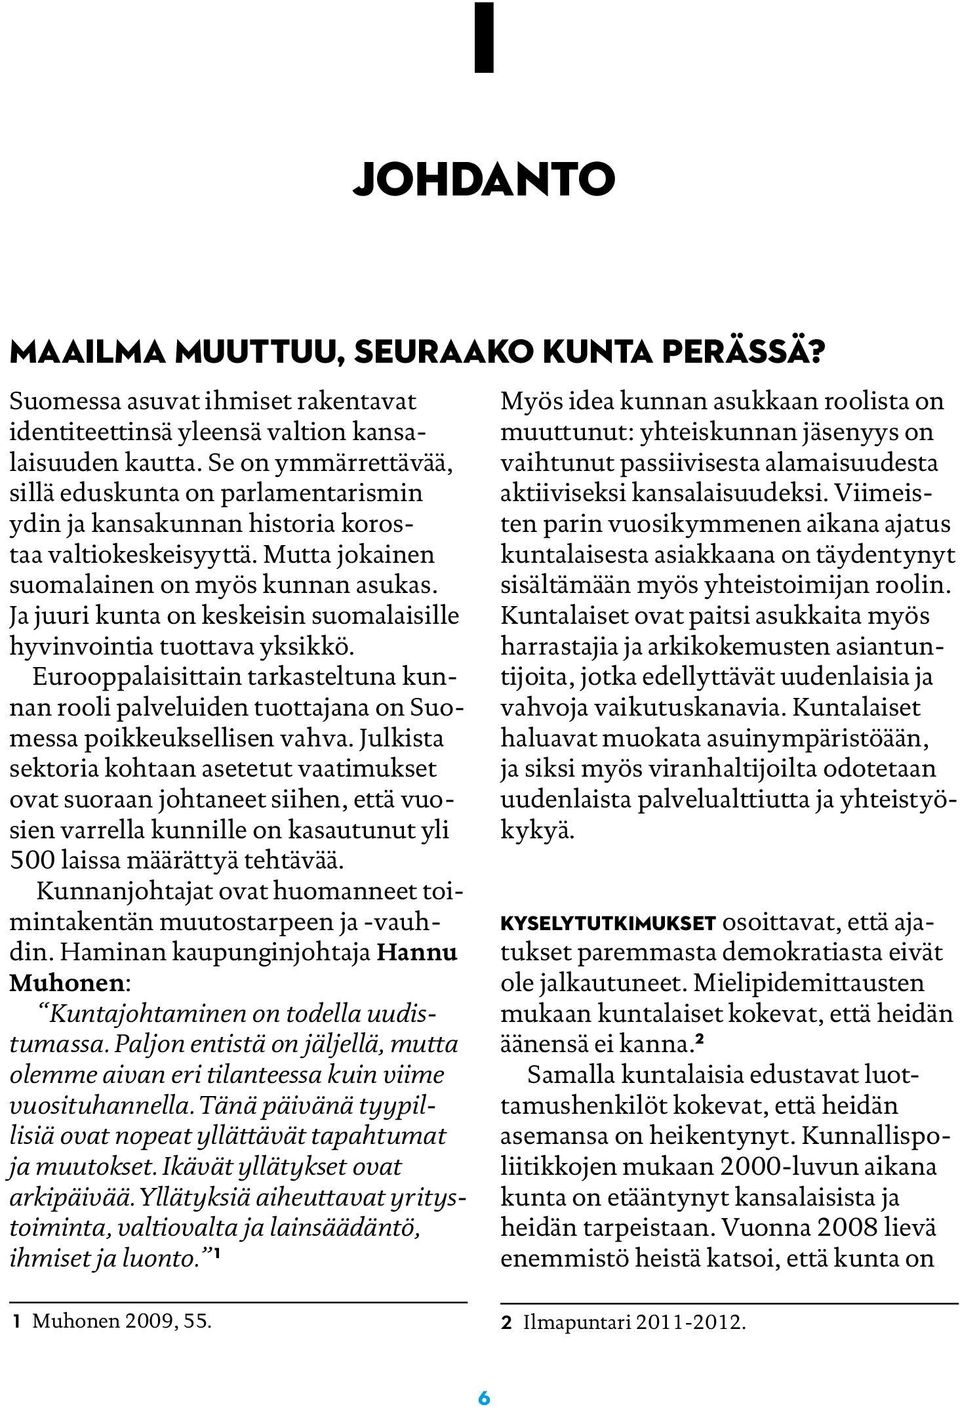 Ja juuri kunta on keskeisin suomalaisille hyvinvointia tuottava yksikkö. Eurooppalaisittain tarkasteltuna kunnan rooli palveluiden tuottajana on Suomessa poikkeuksellisen vahva.